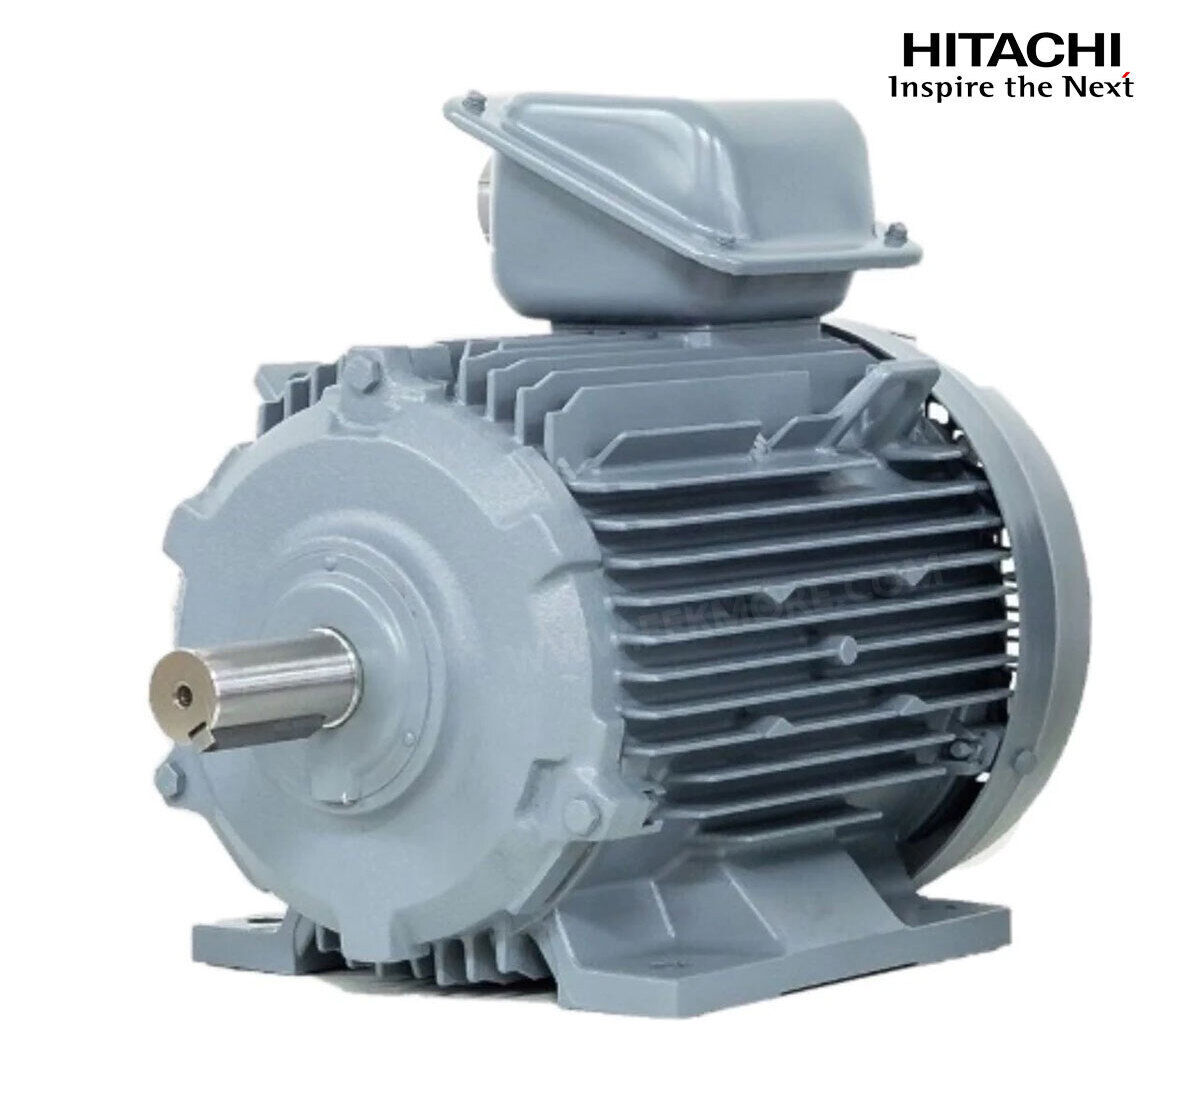 มอเตอร์ฮิตาชิของแท้ 100% HITACHI รุ่น TFO-KK กำลัง 75 แรงม้า (55 KW.) กำลังไฟฟ้าที่ใช้ 380V ความเร็วรอบตัวเปล่า 1450 RPM แกนเพลามอเตอร์ 65 MM.รับประกัน 3 ปี มีของพร้อมจัดส่งทุกวัน